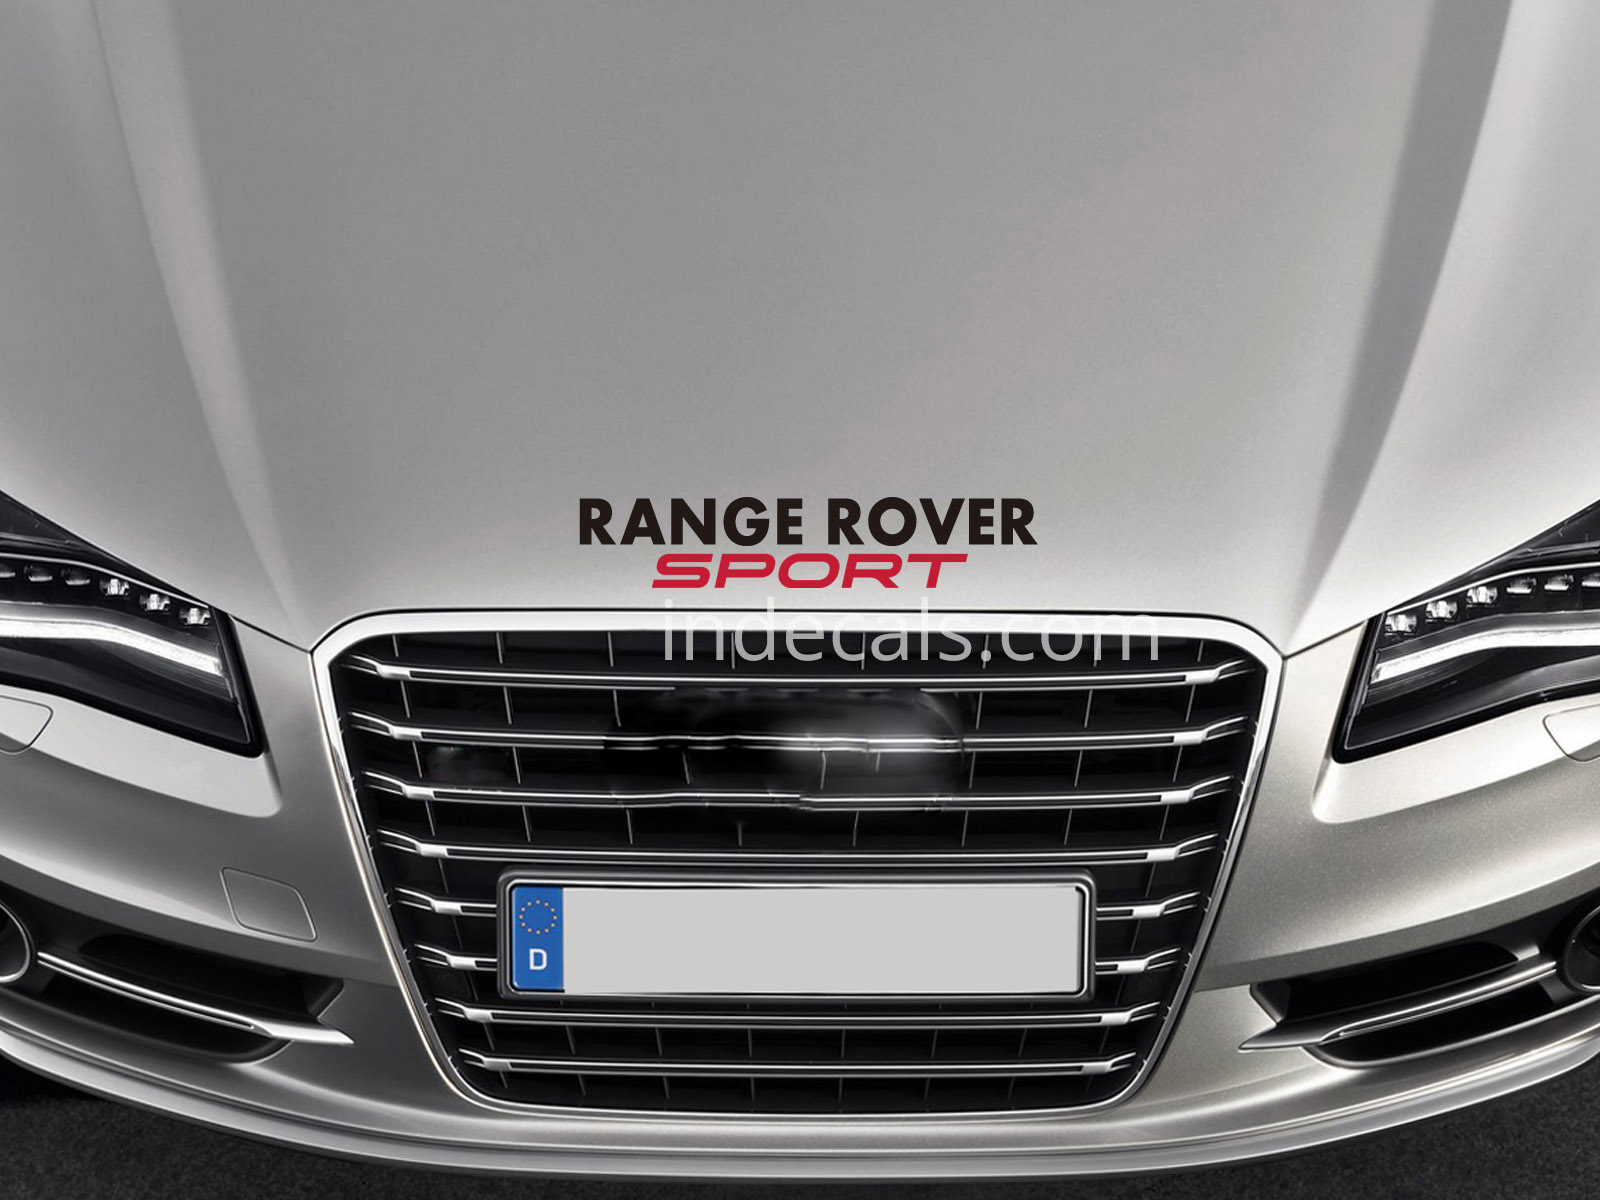 1 x Range Rover Sport Sticker for Bonnet - Black & Red